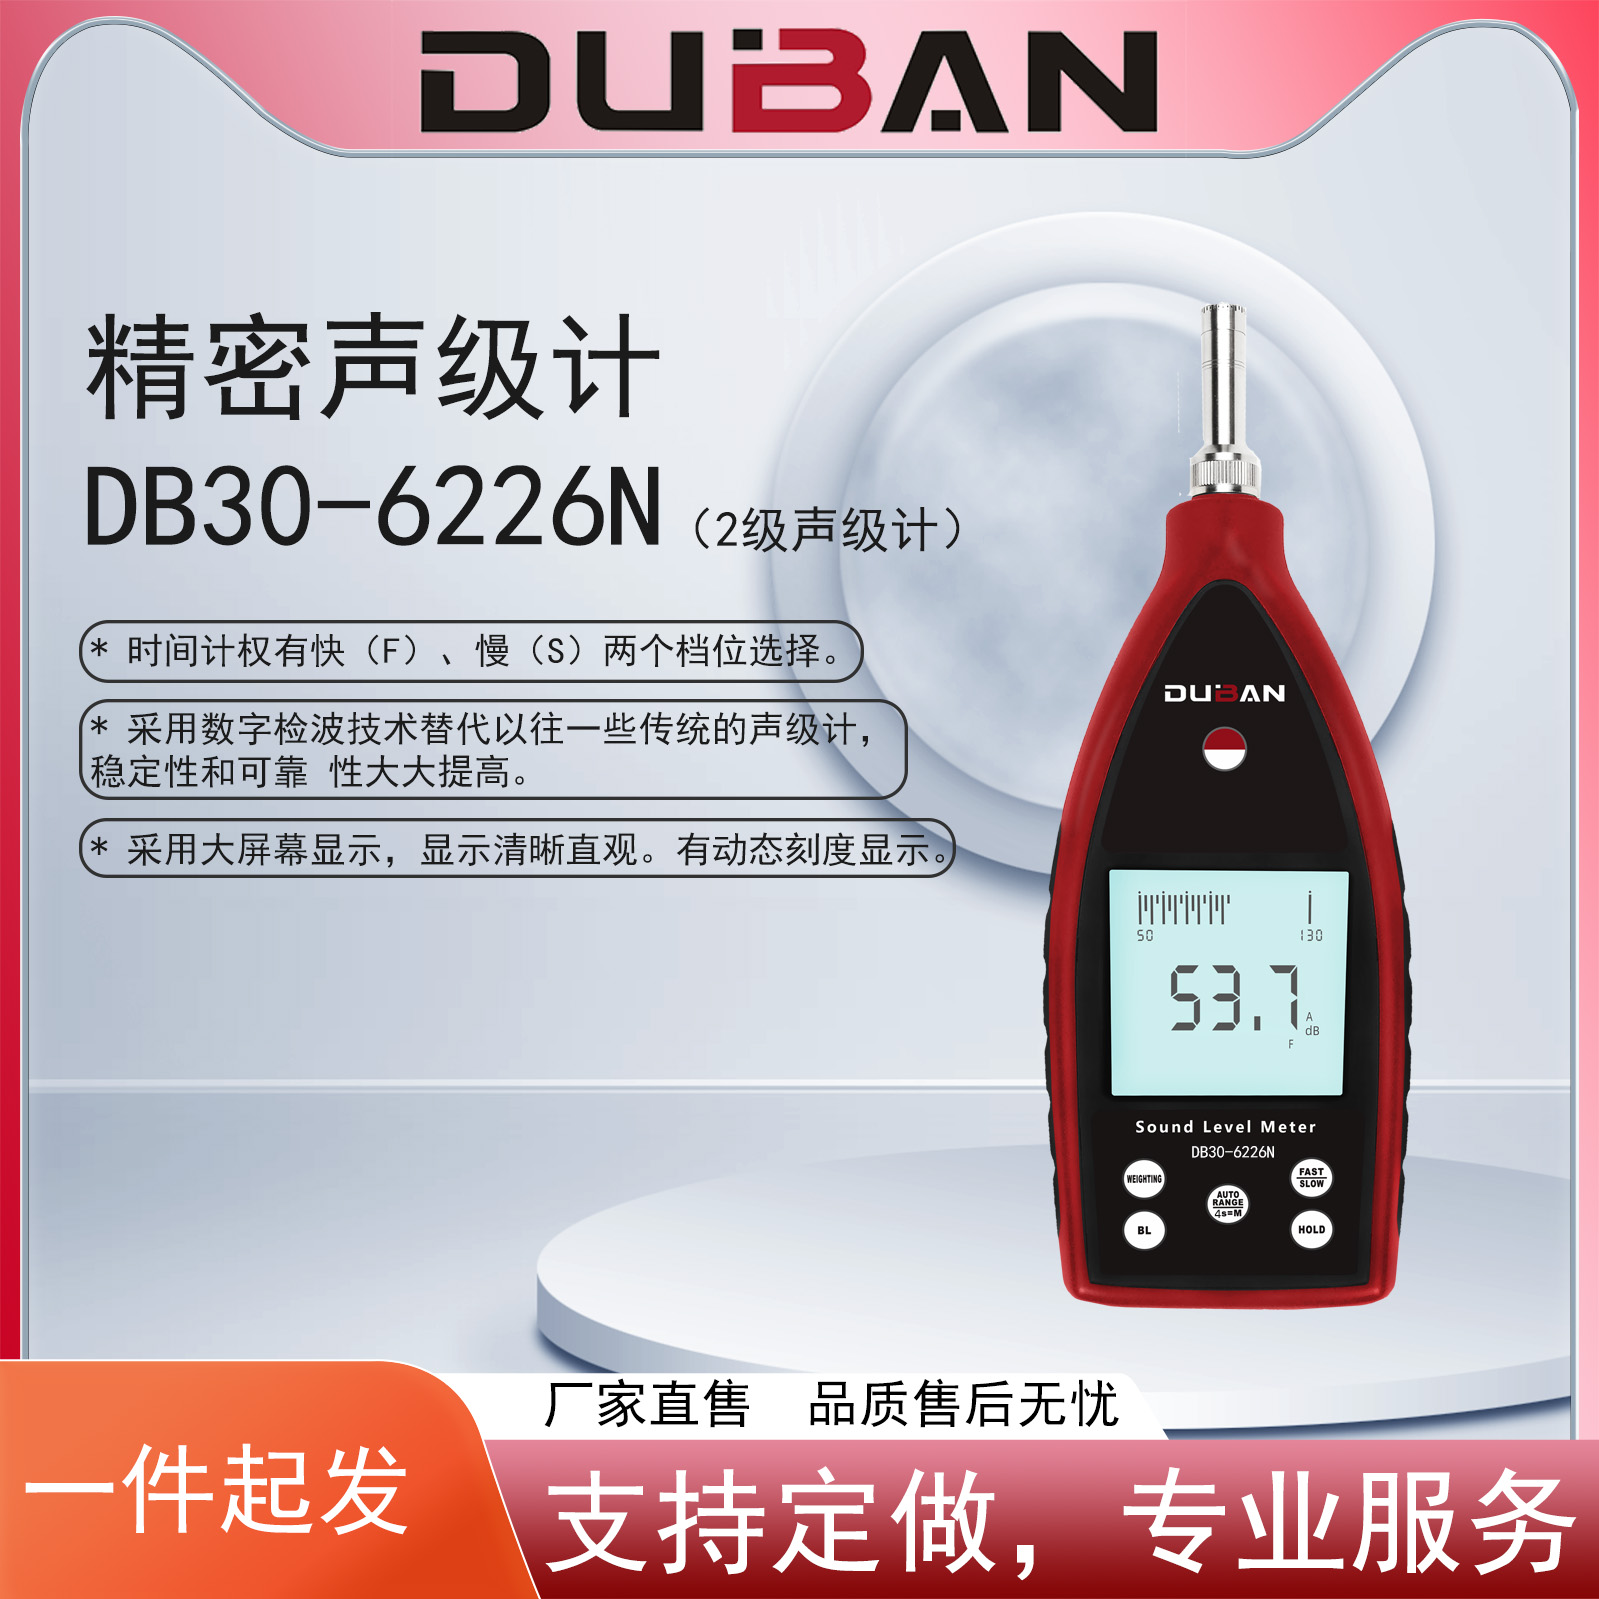 精密声级计 DB30-6226N厂家，精密声级计 DB30-6226N报价，精密声级计 DB30-6226N批发